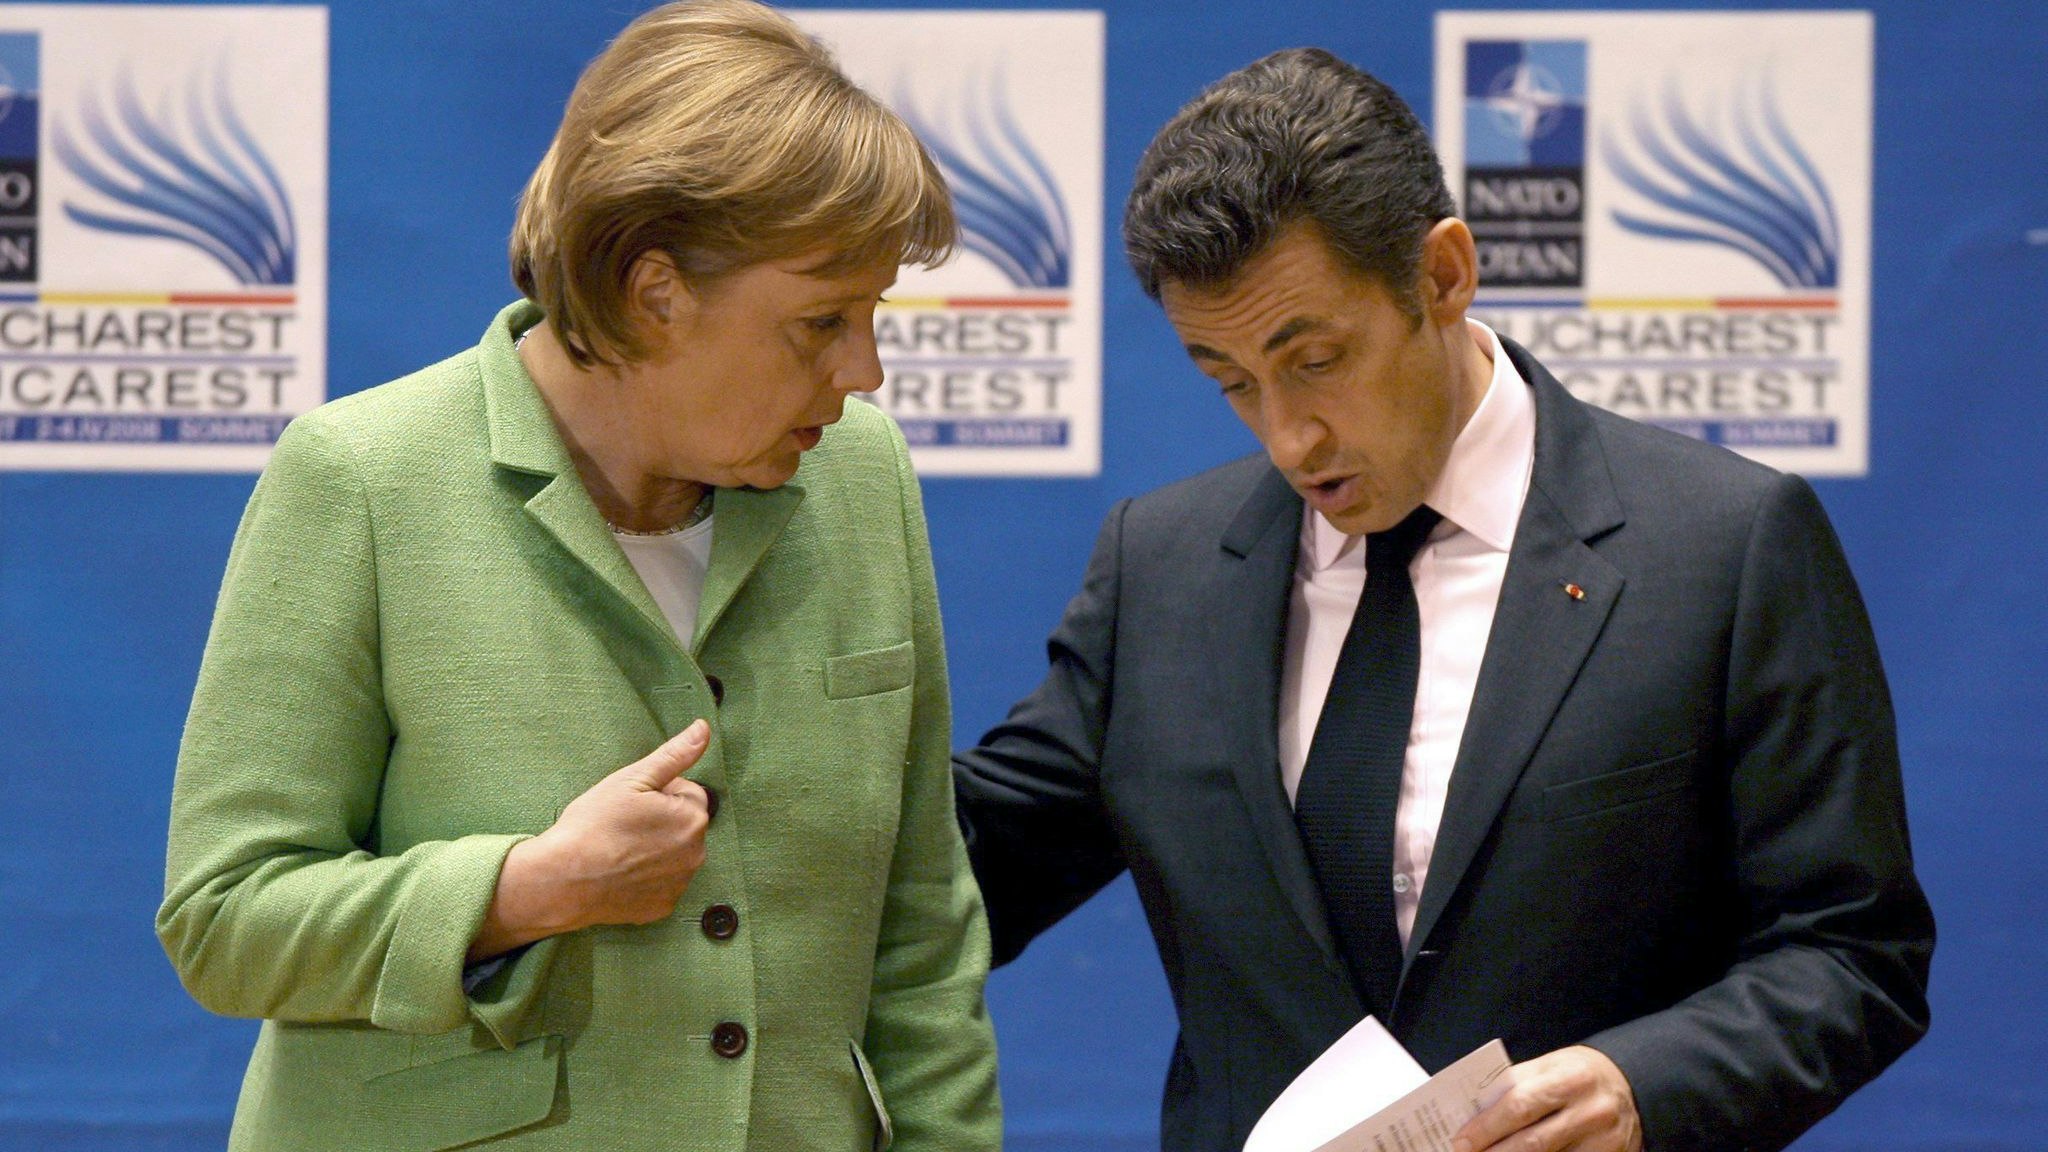 Die damalige Bundeskanzlerin Angela Merkel (l, CDU) spricht mit Nicolas Sarkozy, damals Präsident von Frankreich, am Ende der Eröffnungssitzung des NATO-Gipfels. Foto: dpa/epa/Ghement